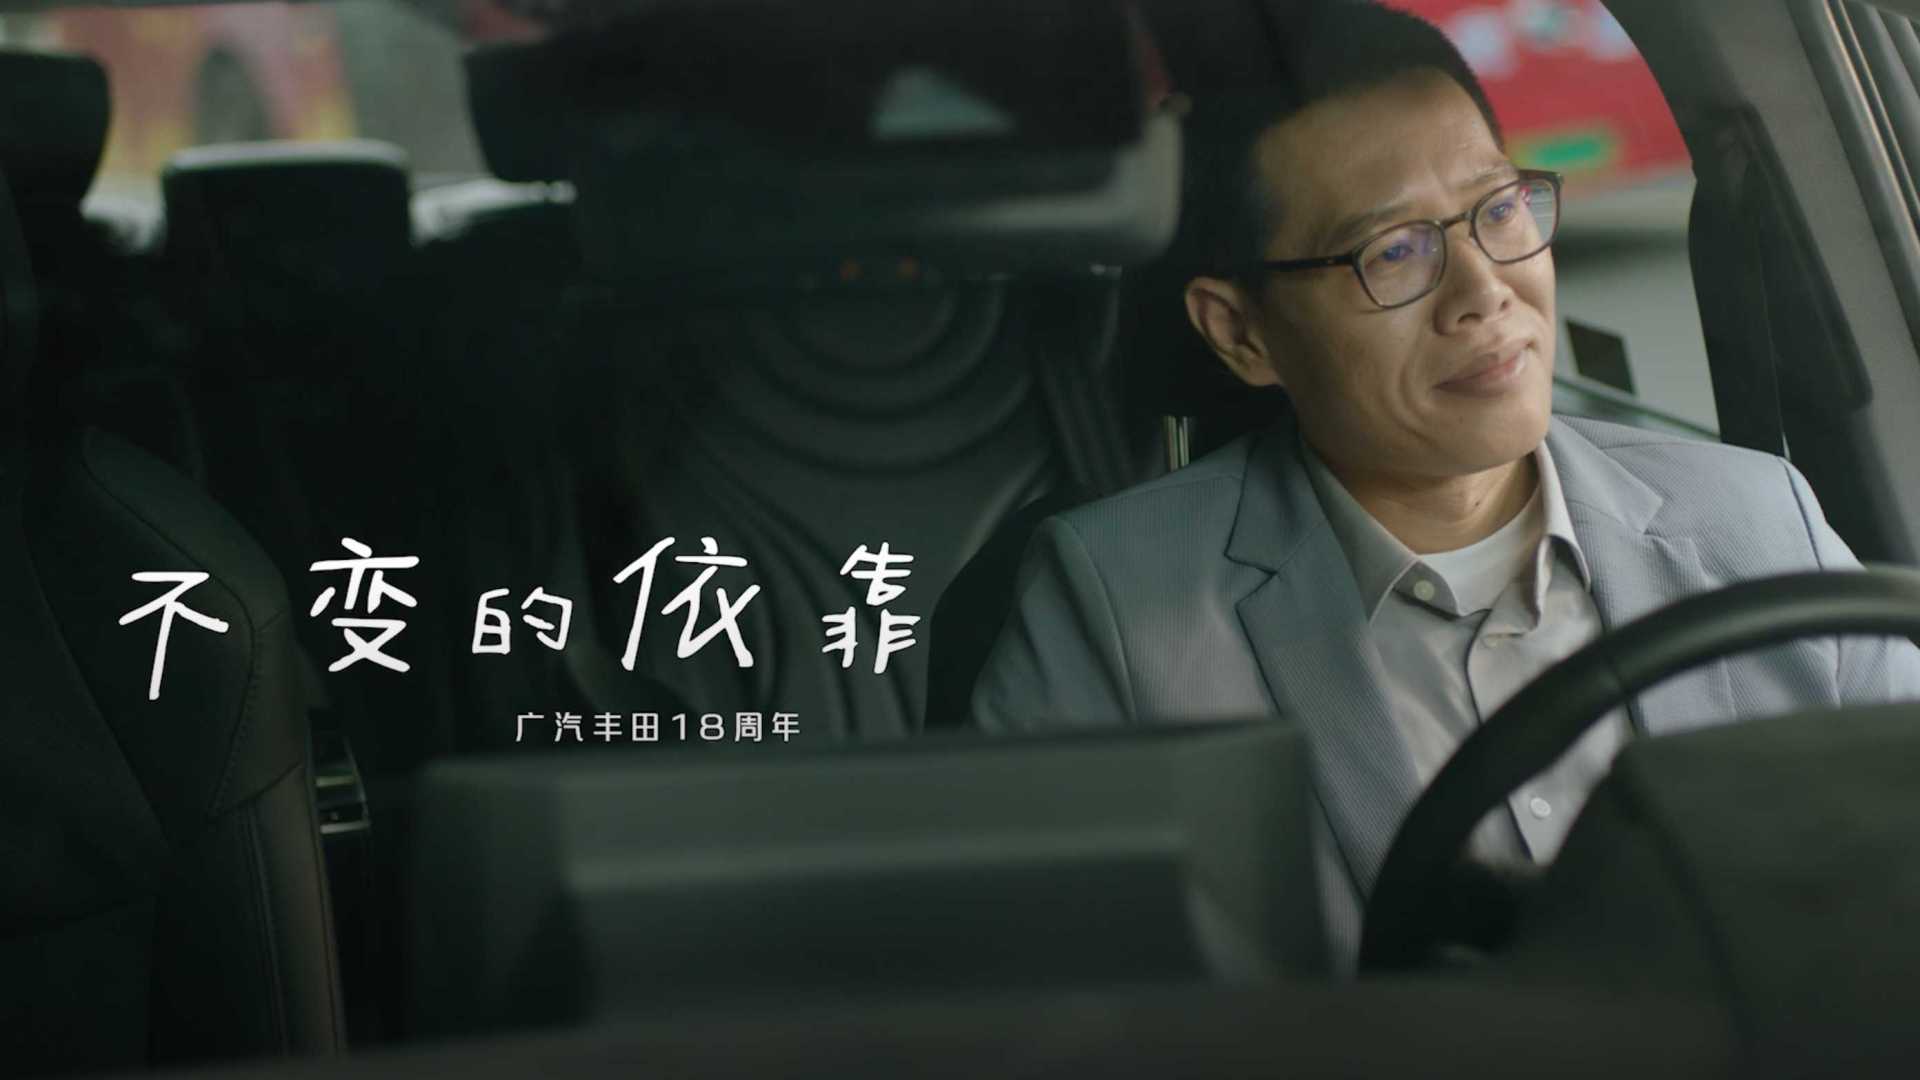 十点读书x互动映画 | 广汽丰田18周年微电影《不变的依靠》